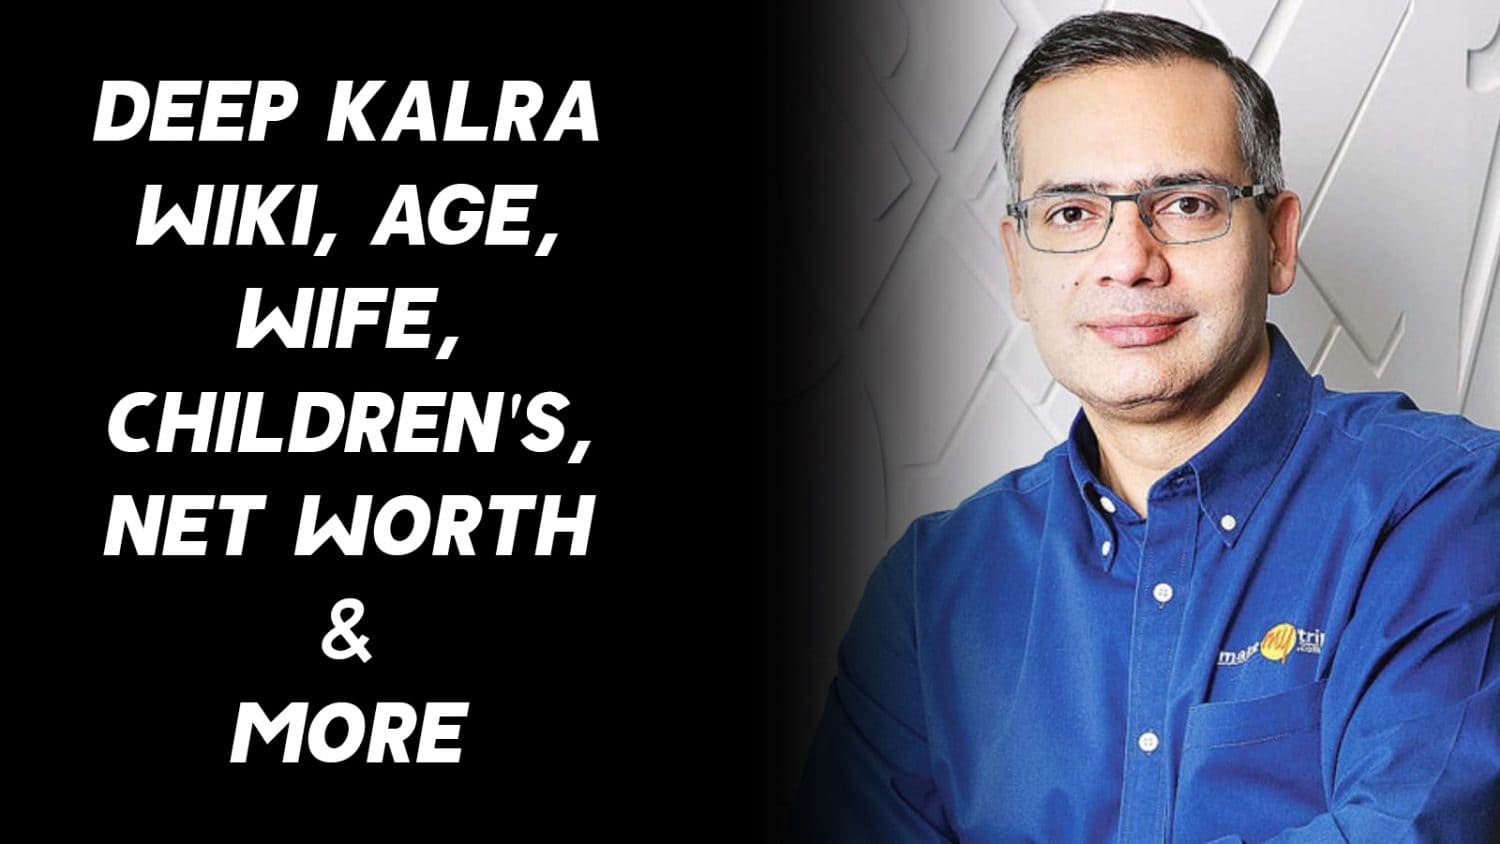 Deep Kalra Wiki, Age, Wife, Children's, Net Worth & More 1